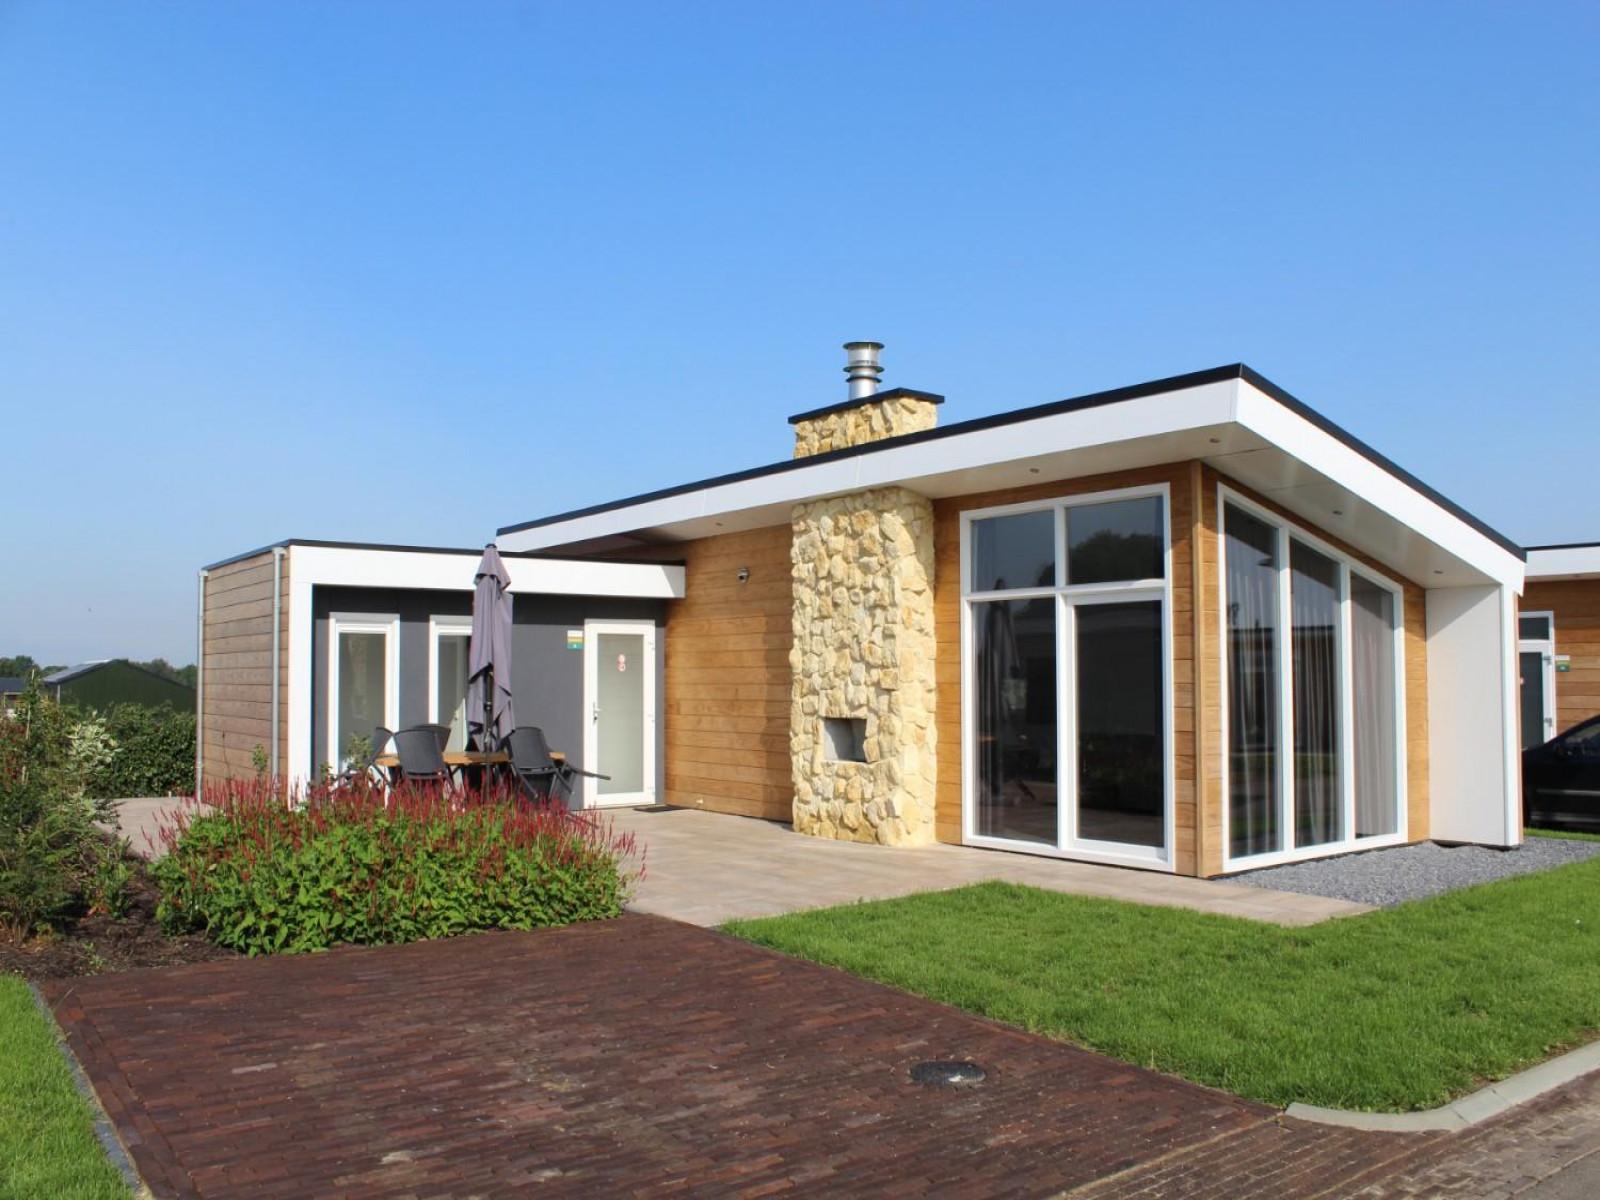 Luxe 6 persoons vakantiehuis in Bemelen nabij Valkenburg - Nederland - Europa - Bemelen